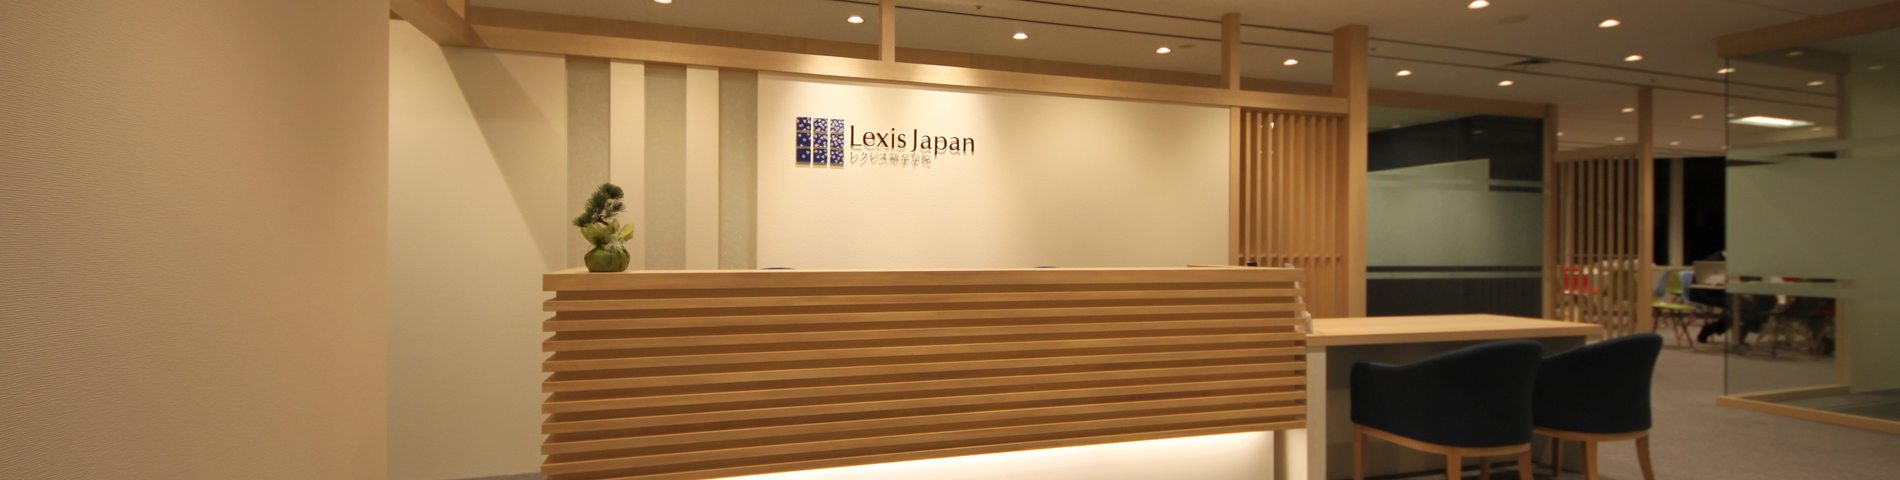 Lexis Japan afbeelding 1